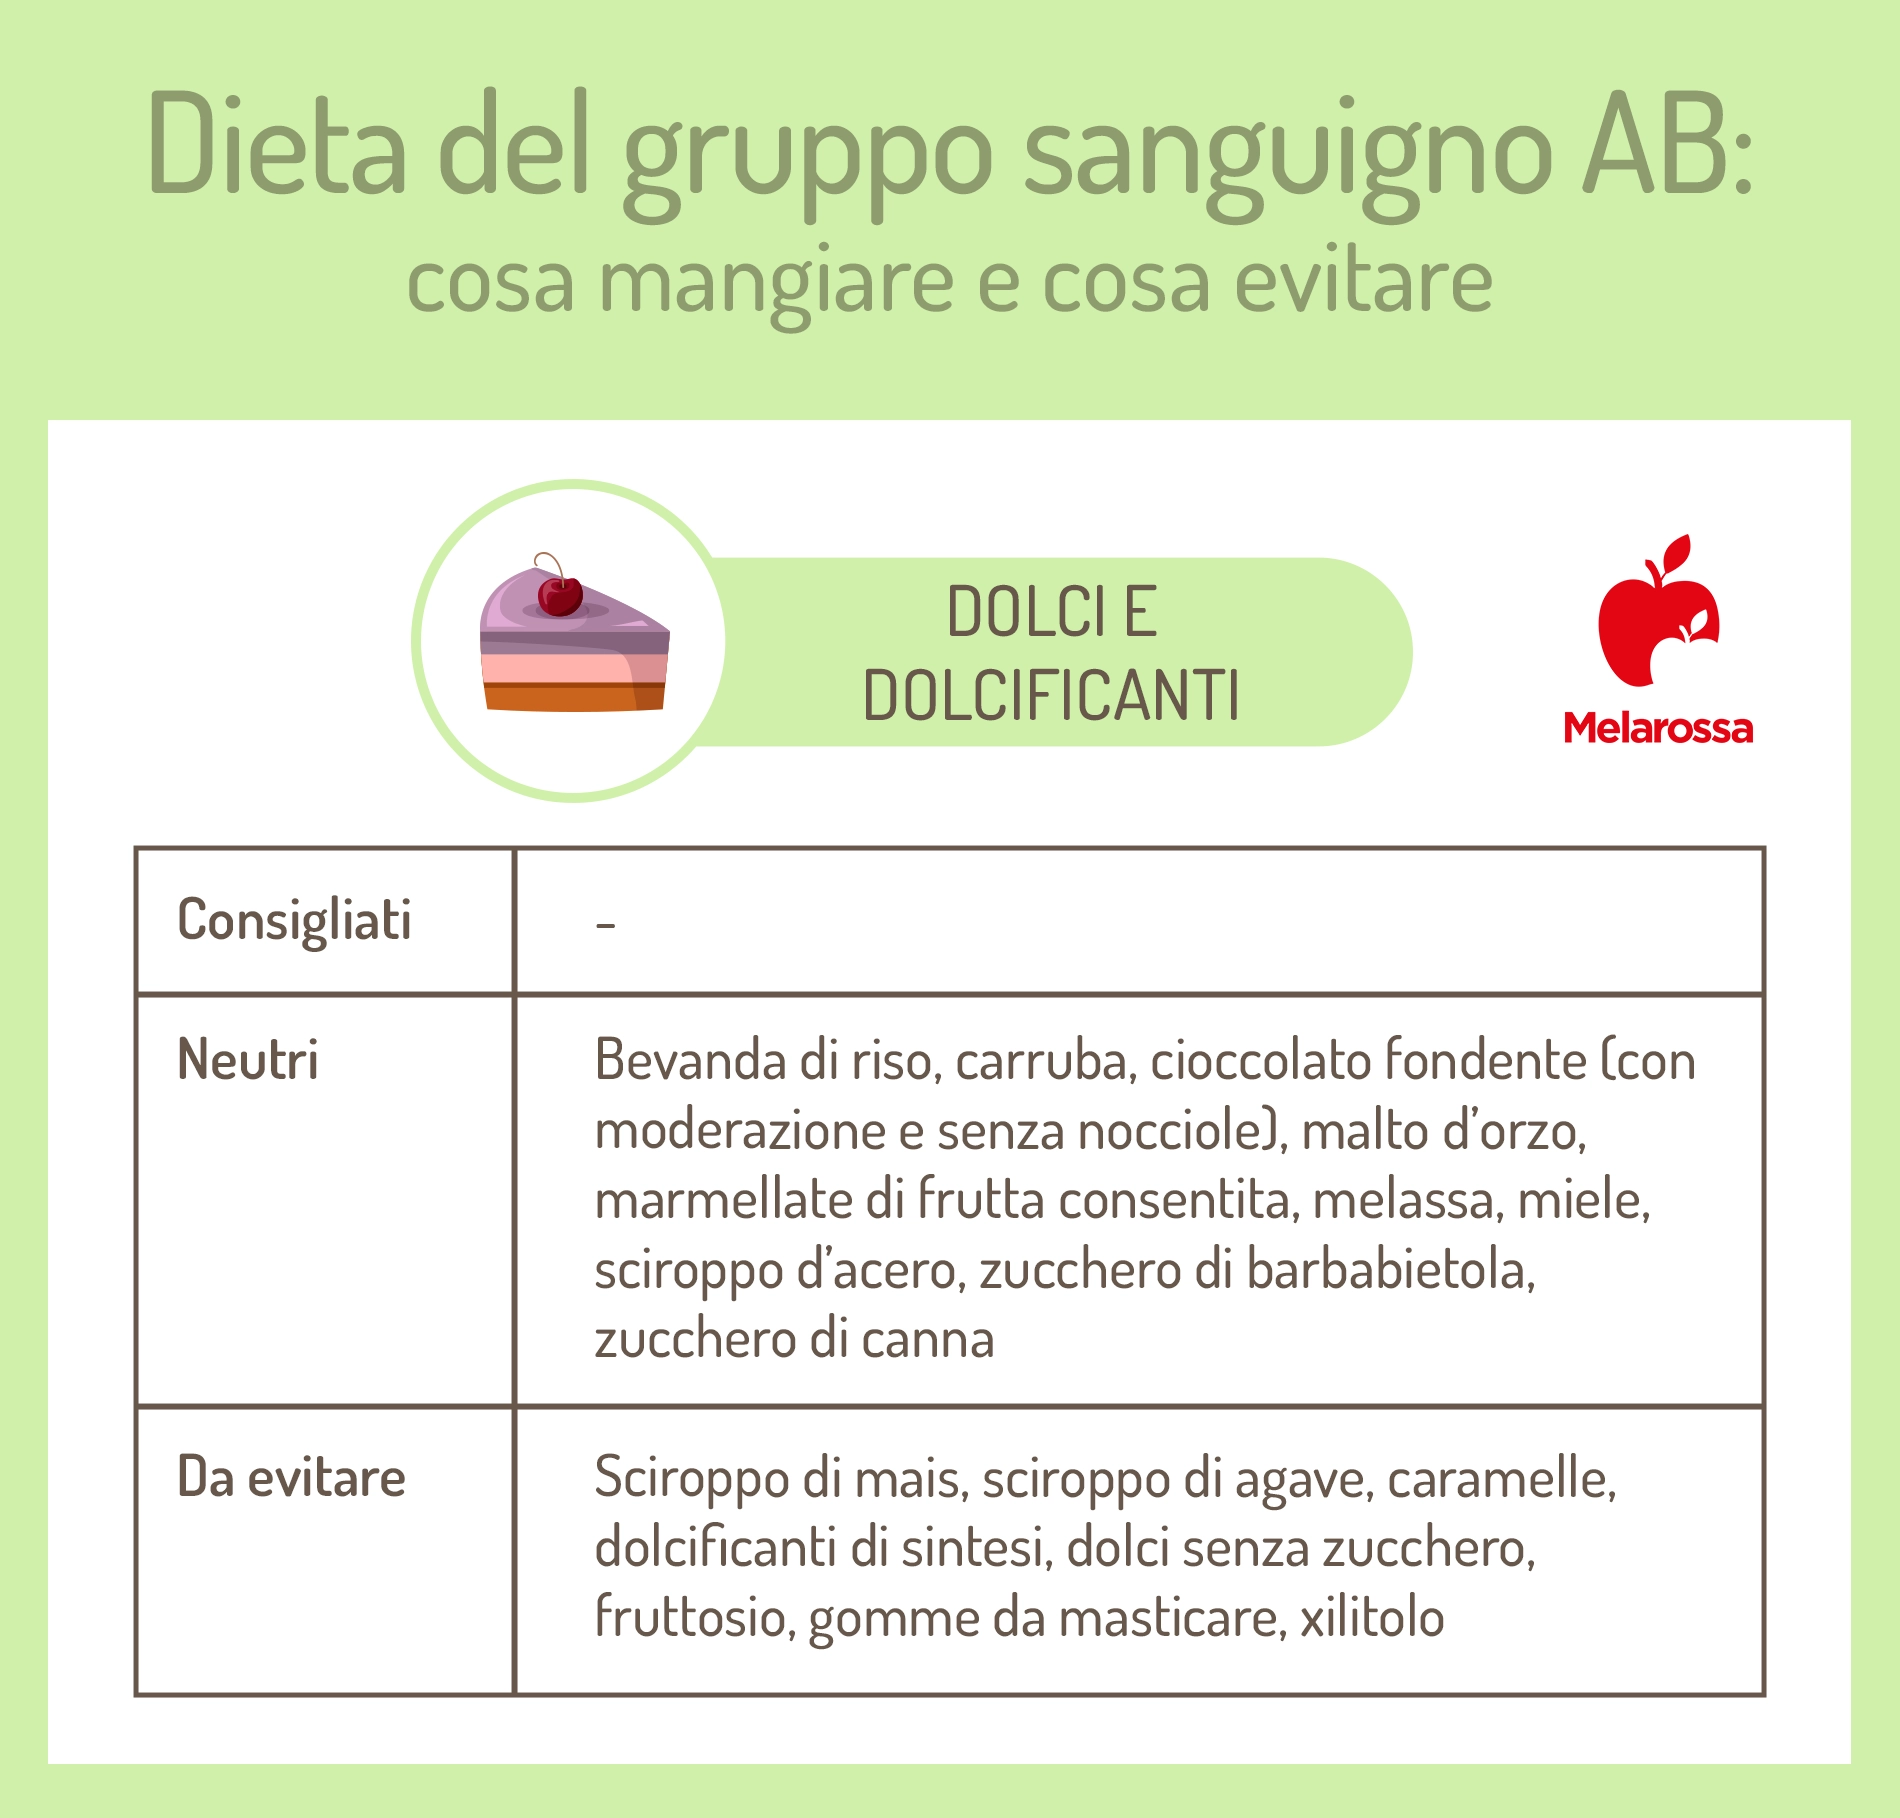 dieta gruppo sanguigno AB: dolci e dolcificanti